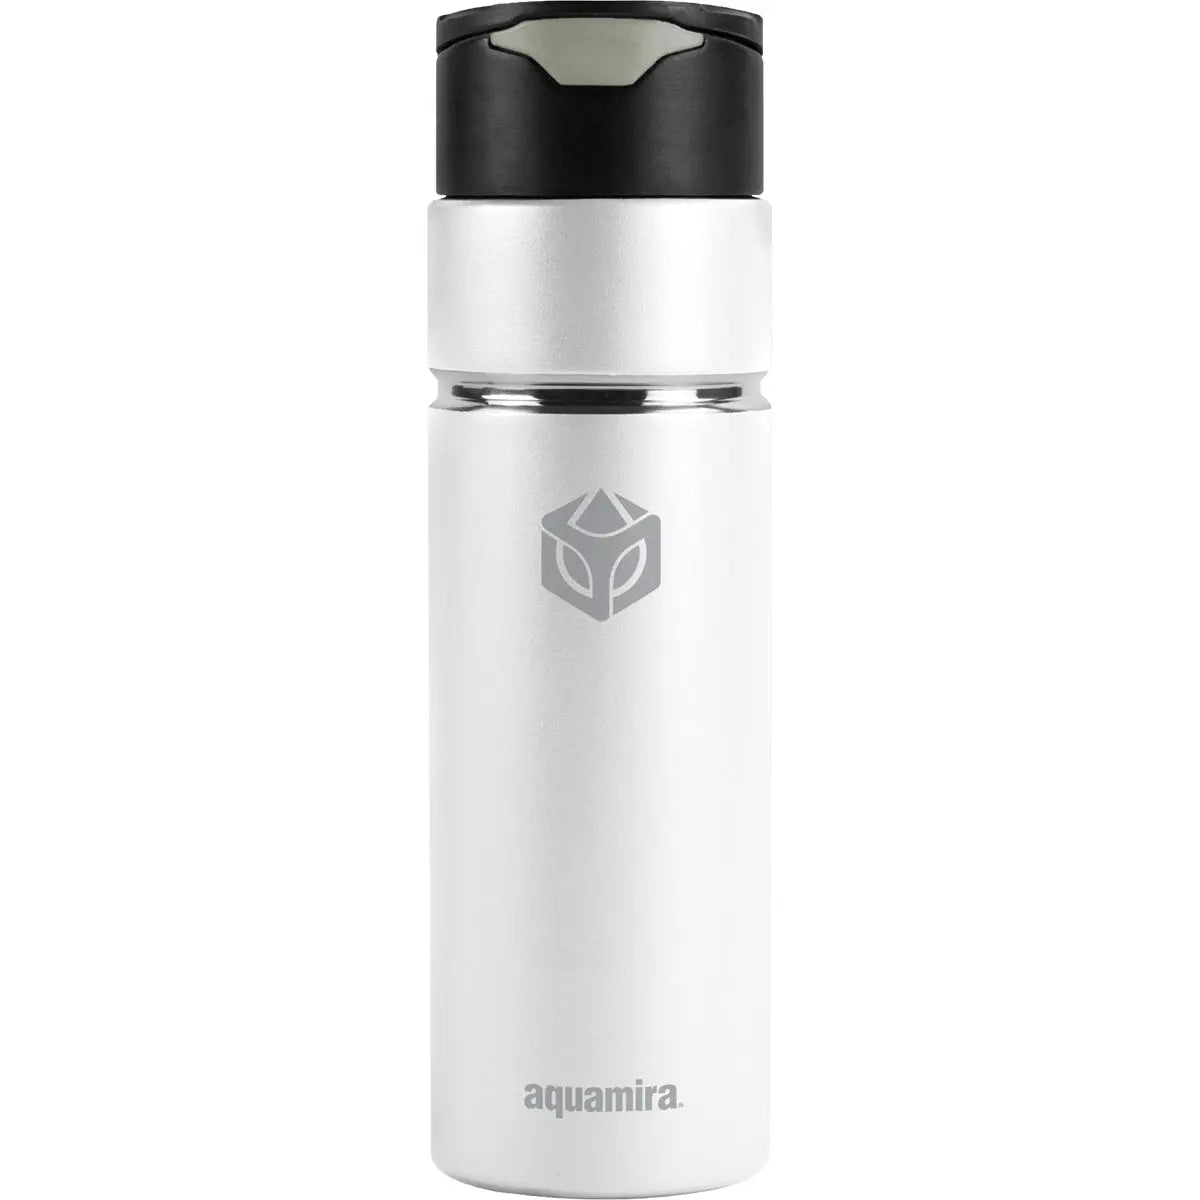 Aquamira 24 oz. Shift Stainless Steel Filter Water Bottle Aquamira